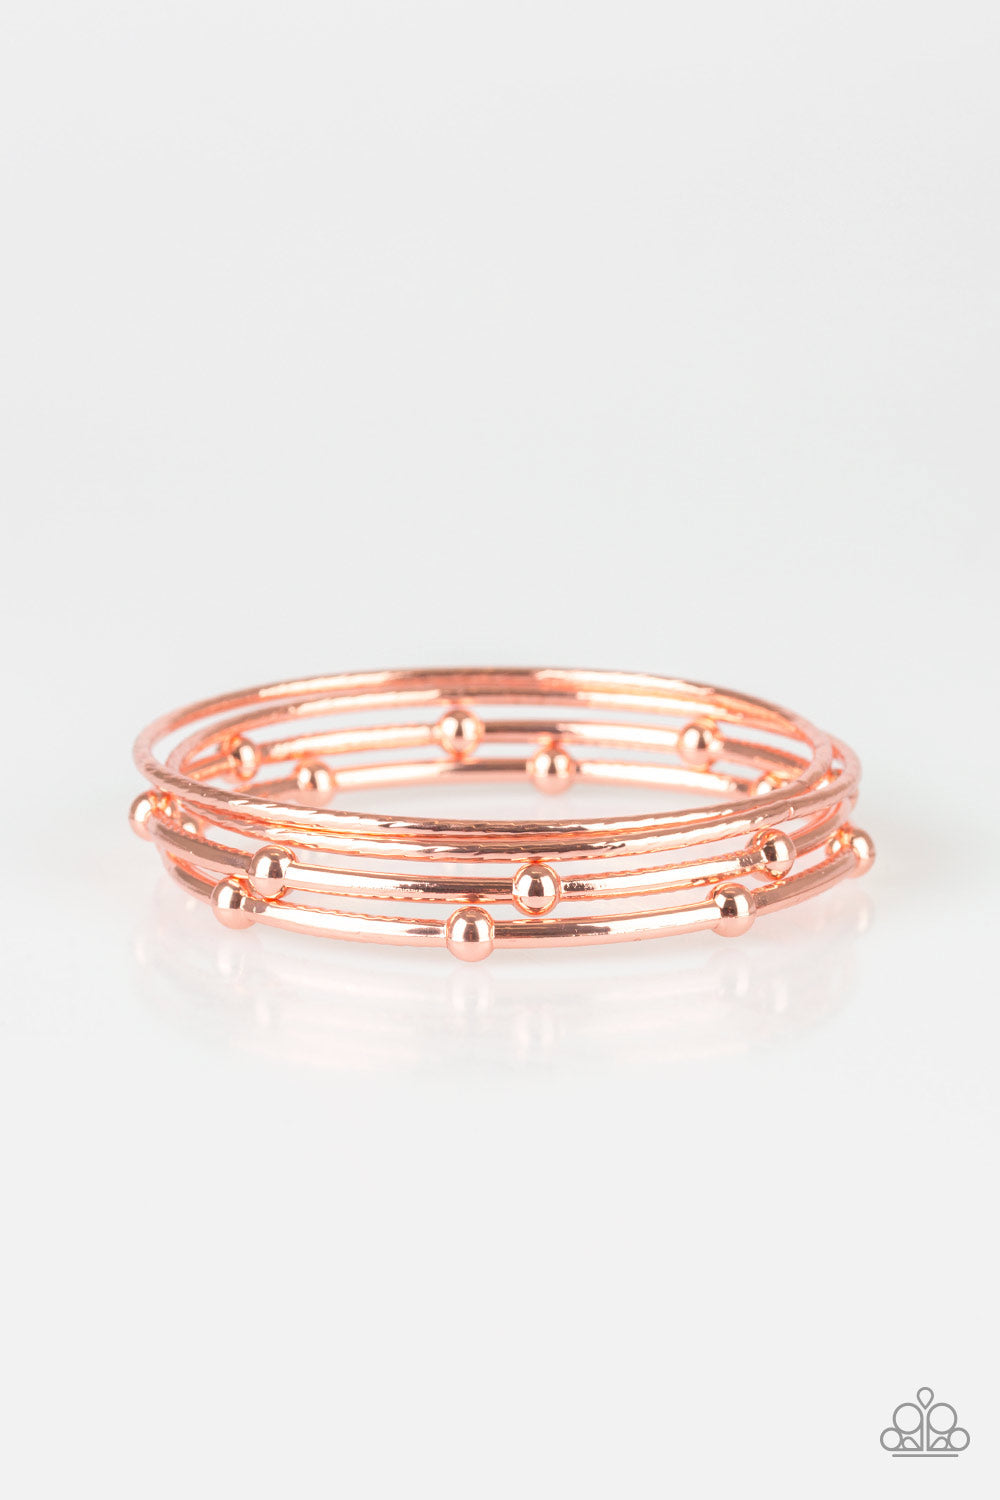 Beauty Basic Bracelet - Copper